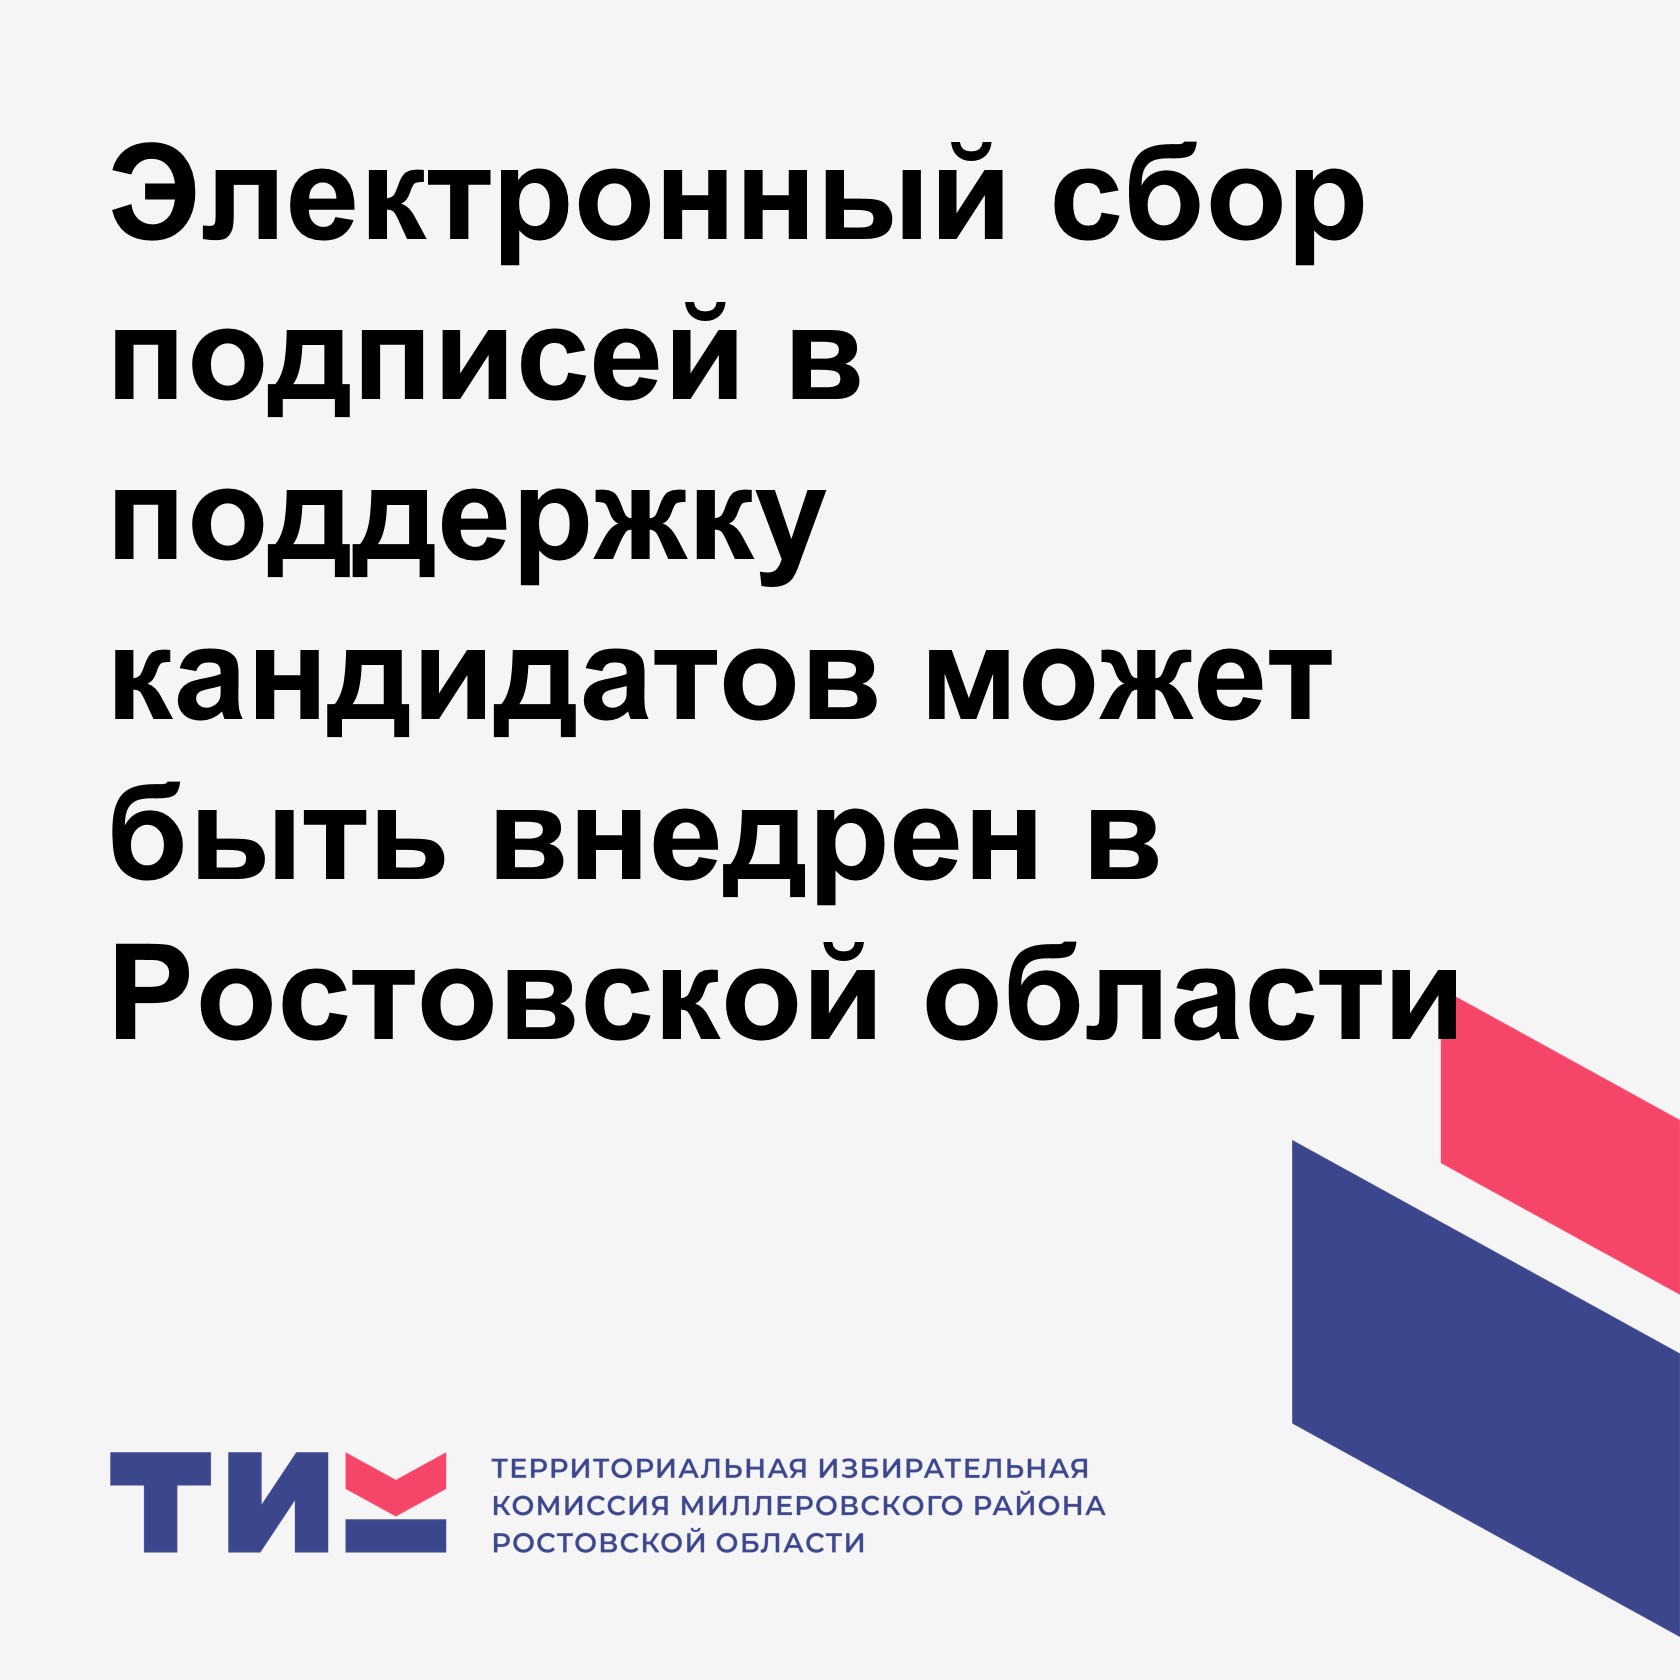 Электронный сбор подписей в поддержку кандидатов может быть внедрен в Ростовской области